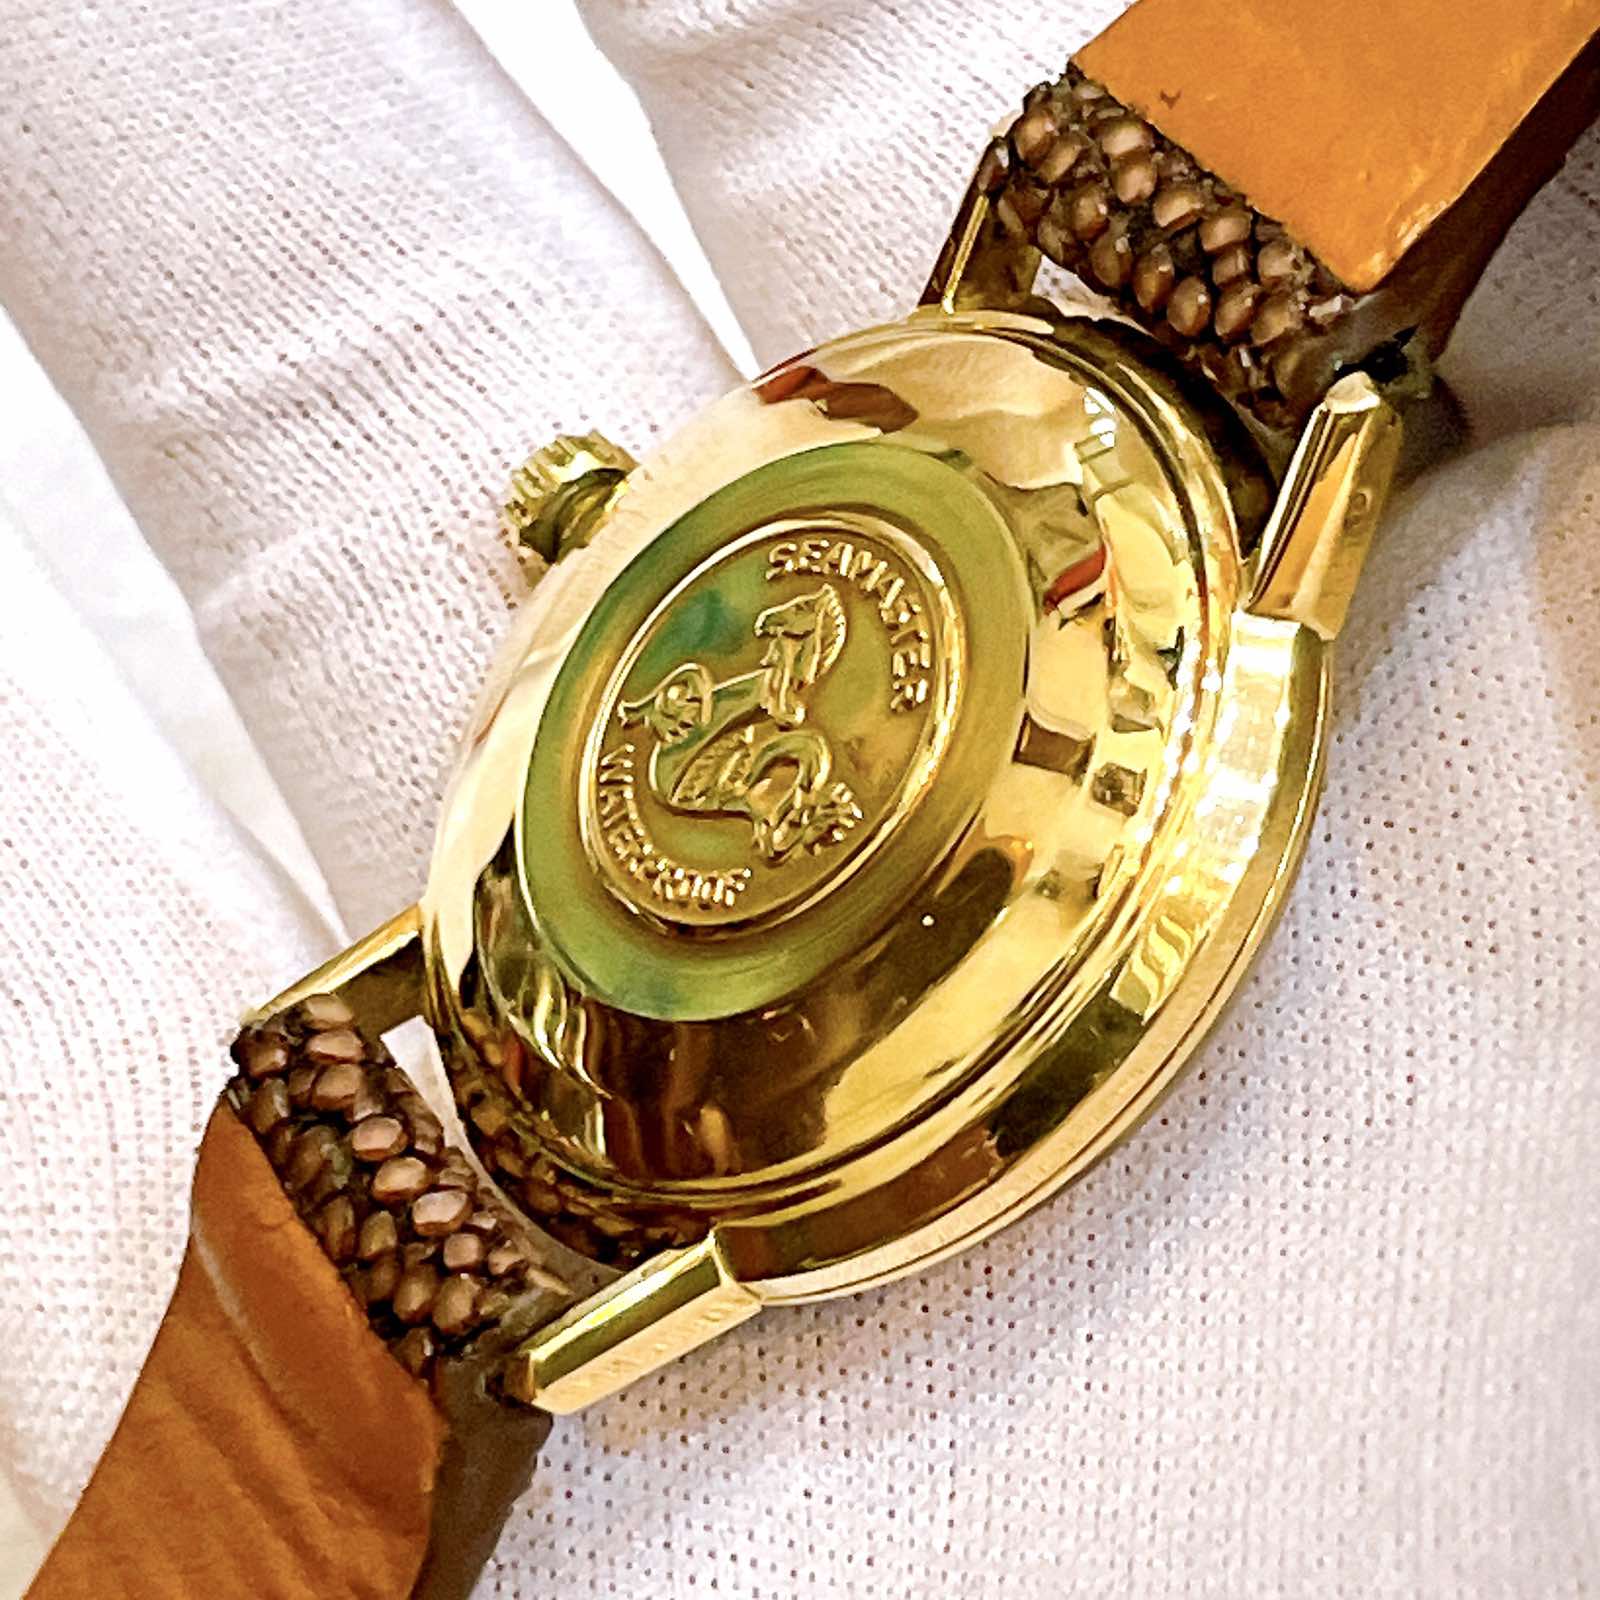 Đồng hồ cổ Omega seamaster Automatic vàng đúc đặc 18k chính hãng thụy Sĩ